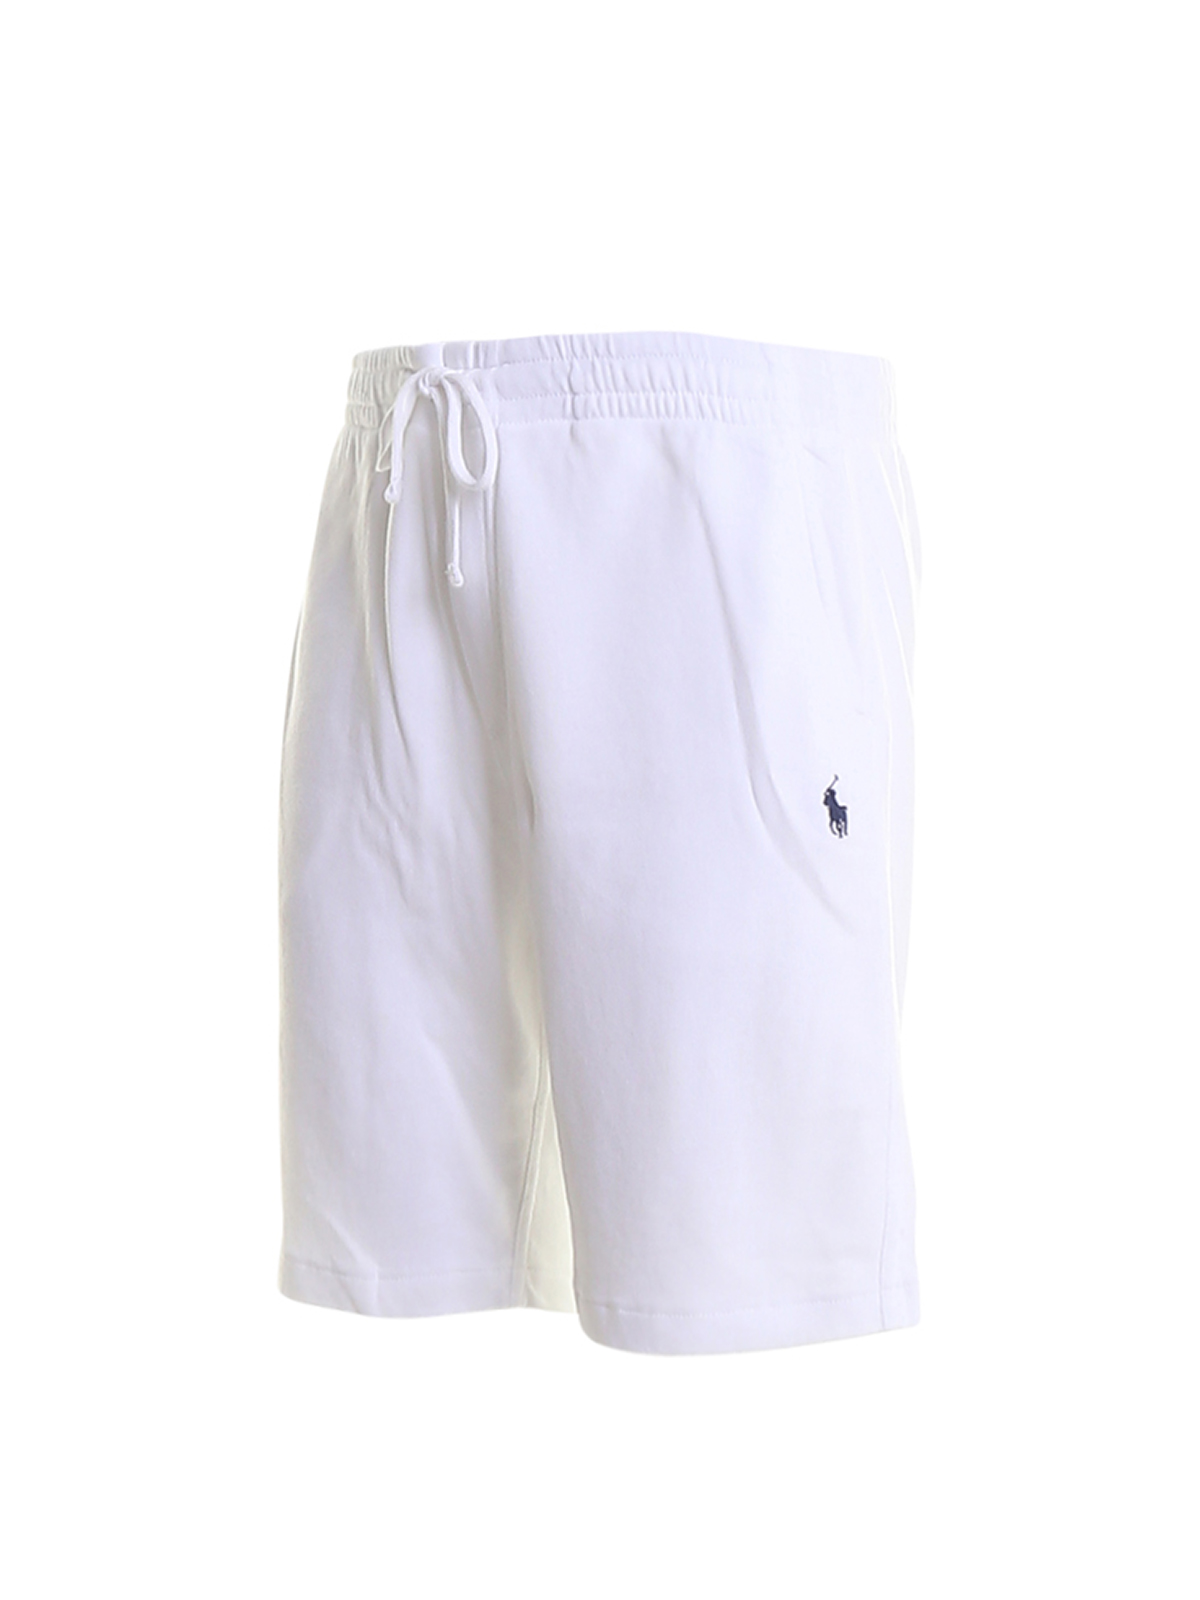 Verbonden Ongeëvenaard Maar Shorts Polo Ralph Lauren - Cotton shorts - 710704271004 | iKRIX.com